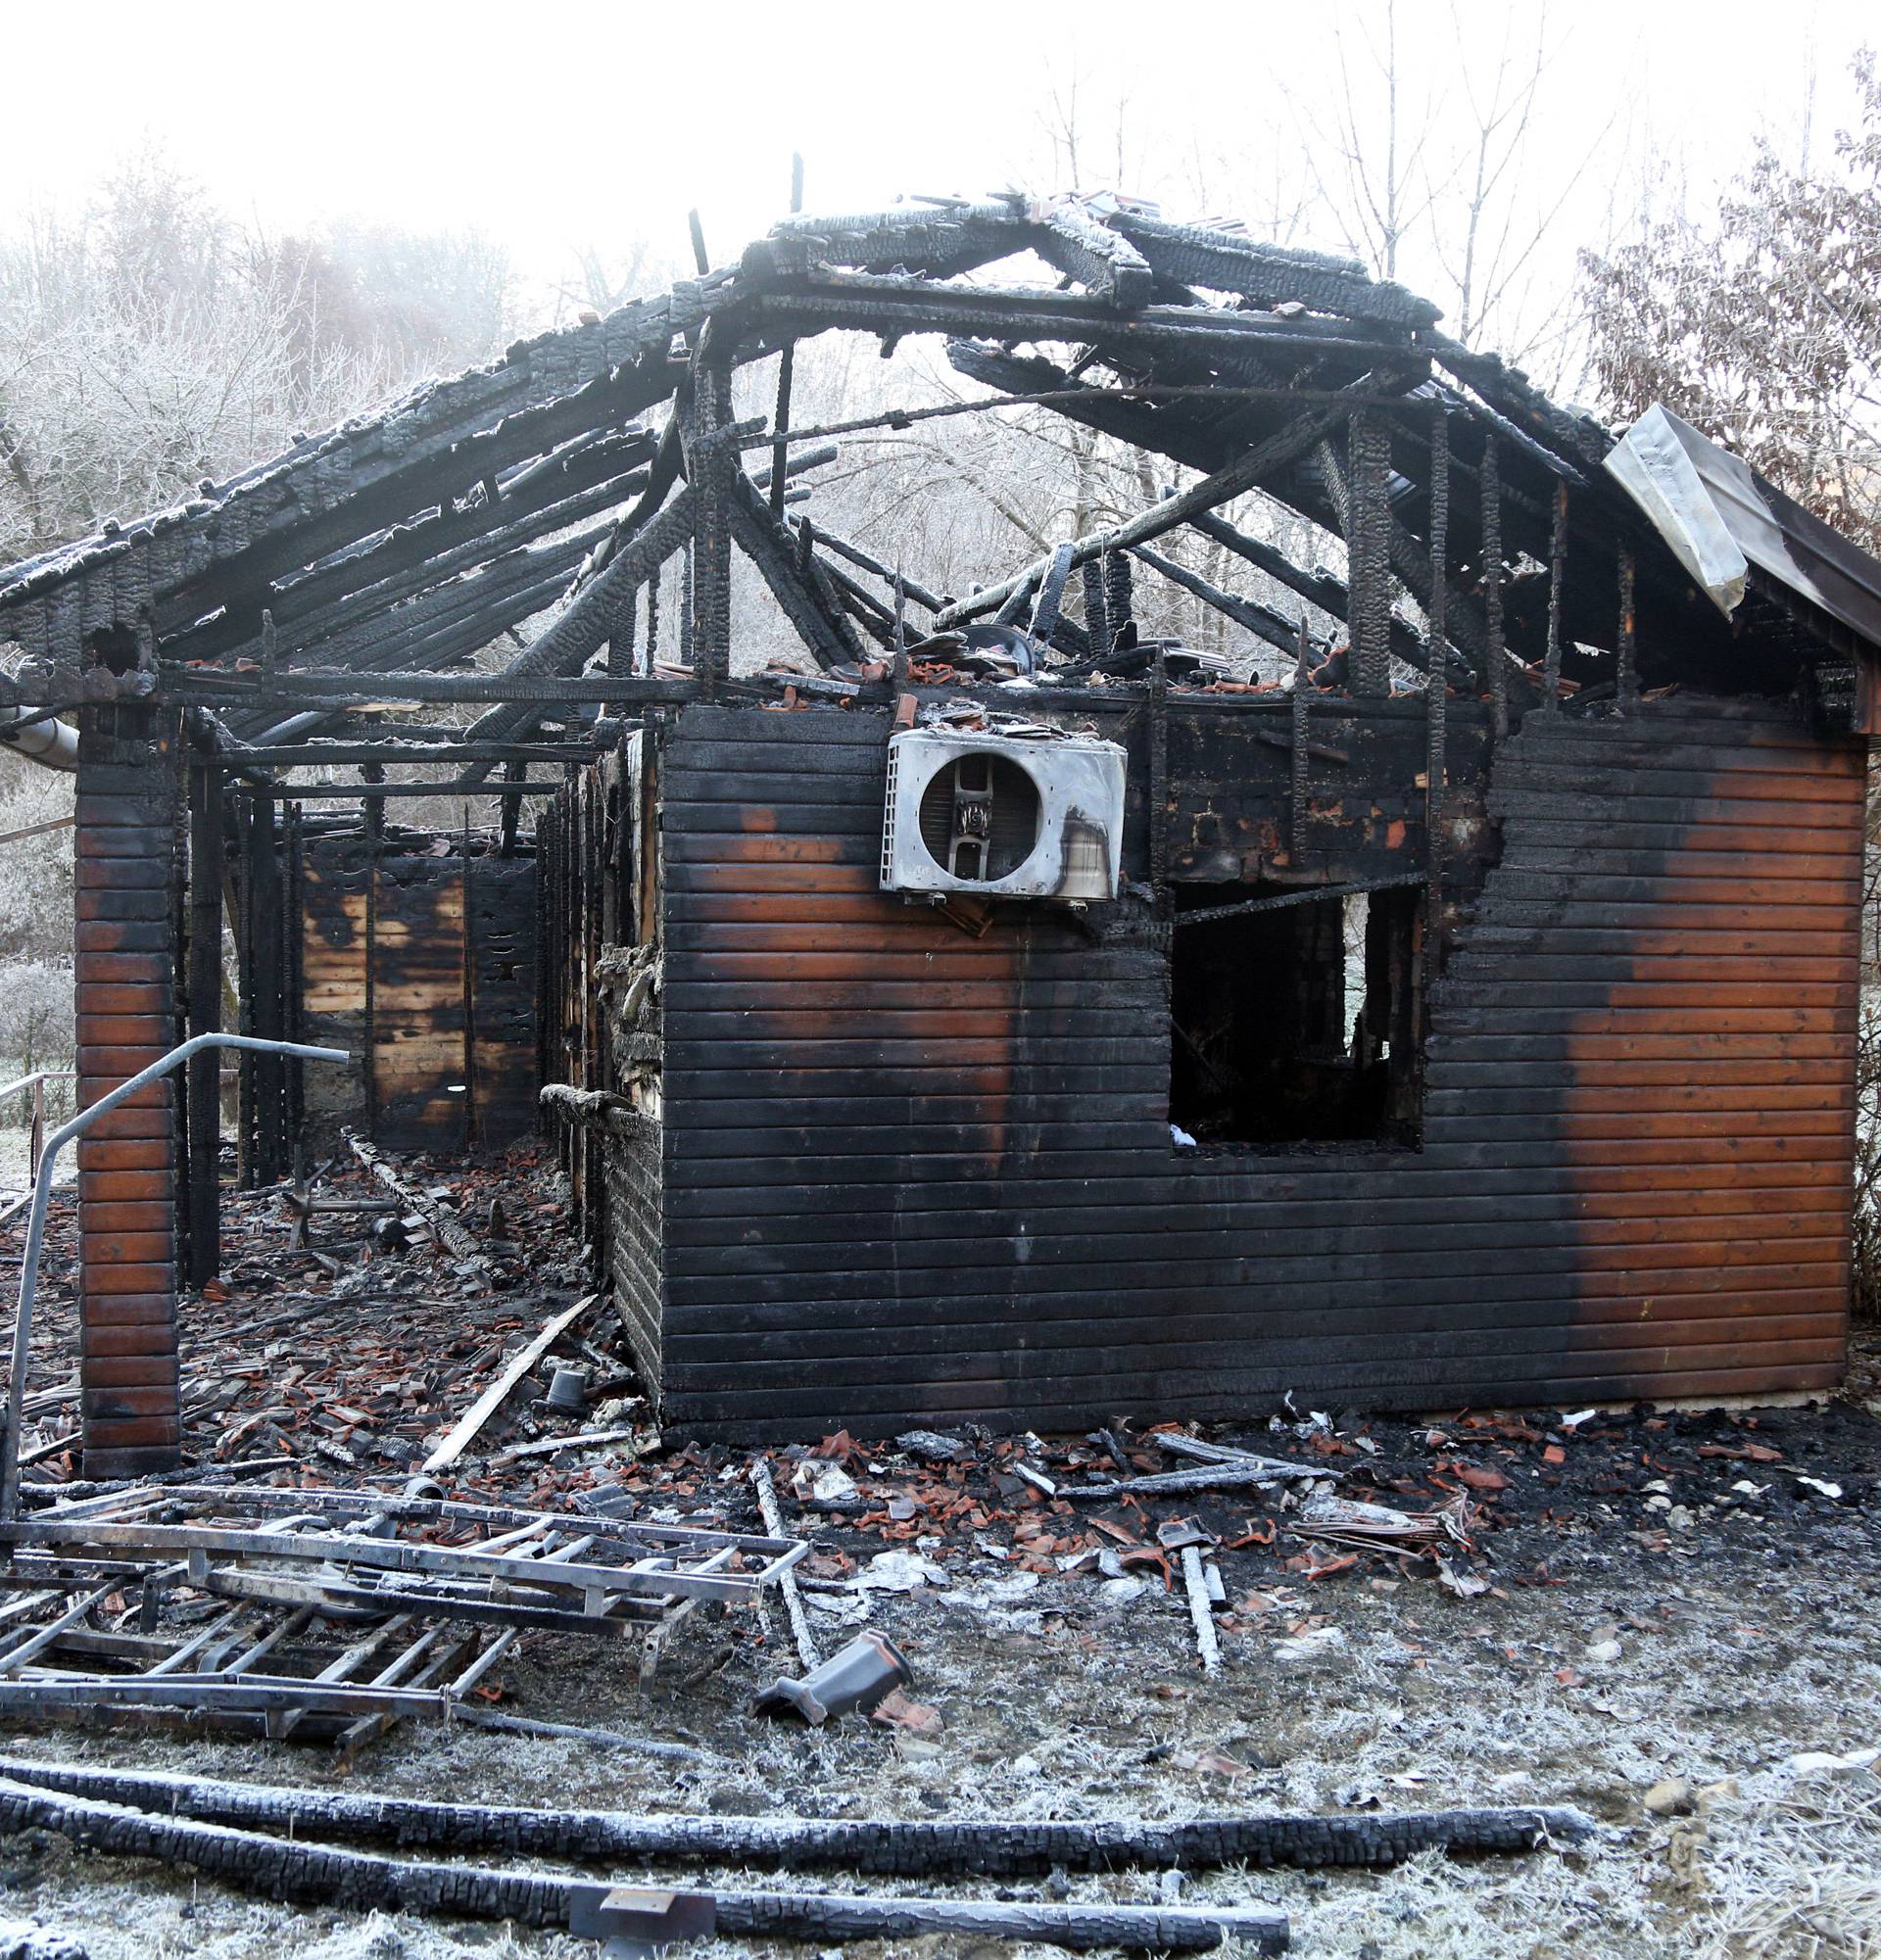 Prodaju kuću kraj zgarišta doma  u kojem su izgorjeli ljudi